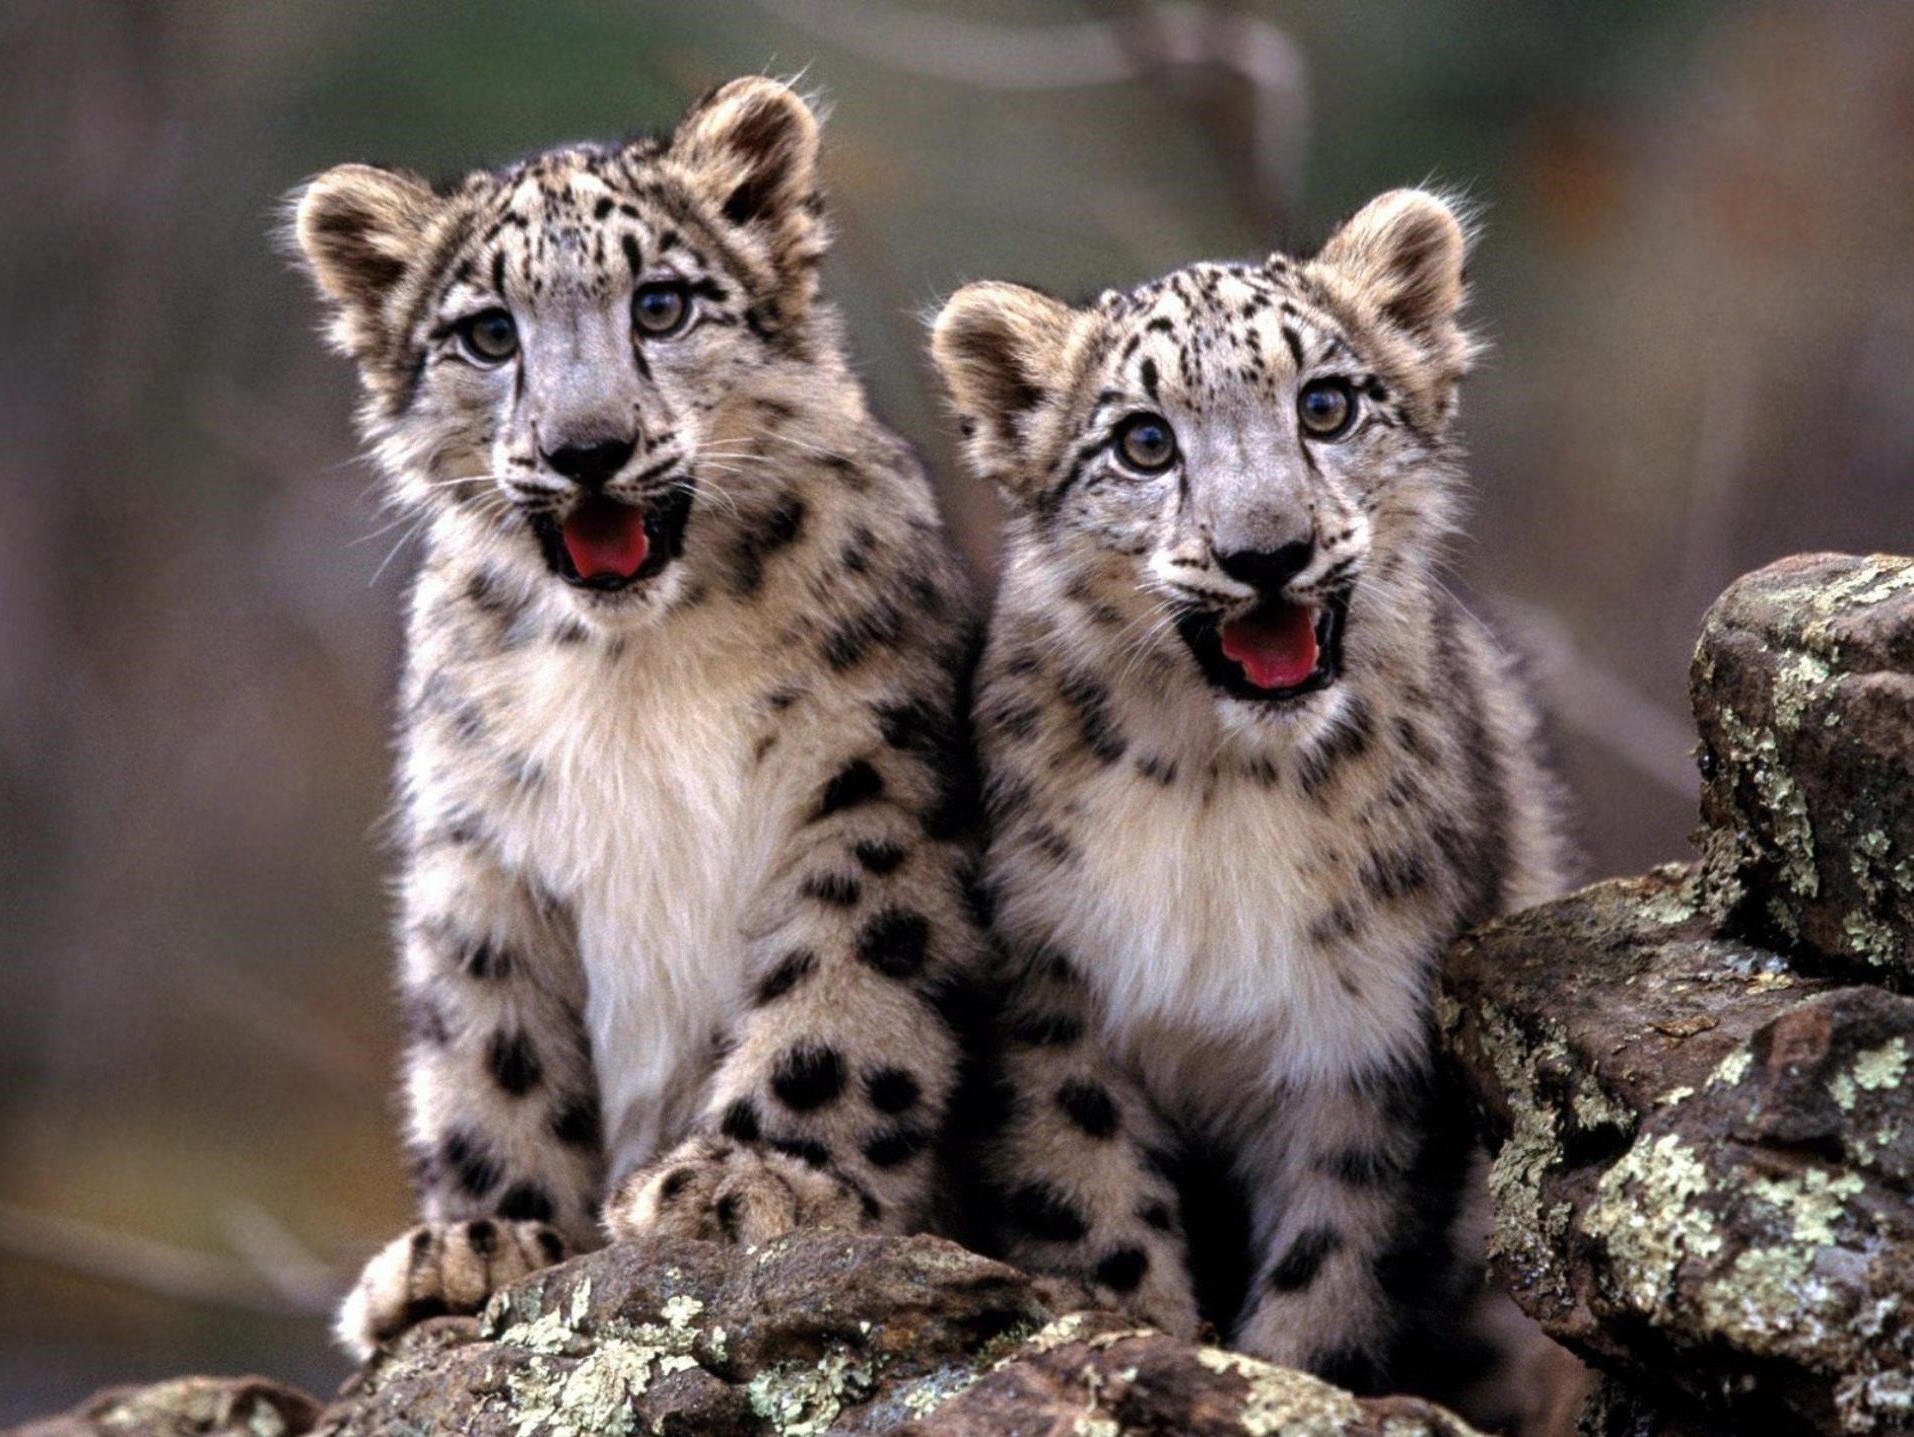 cheetahs wildlife mammal nature cat wild predator animal zoo carnivore outdoors fur